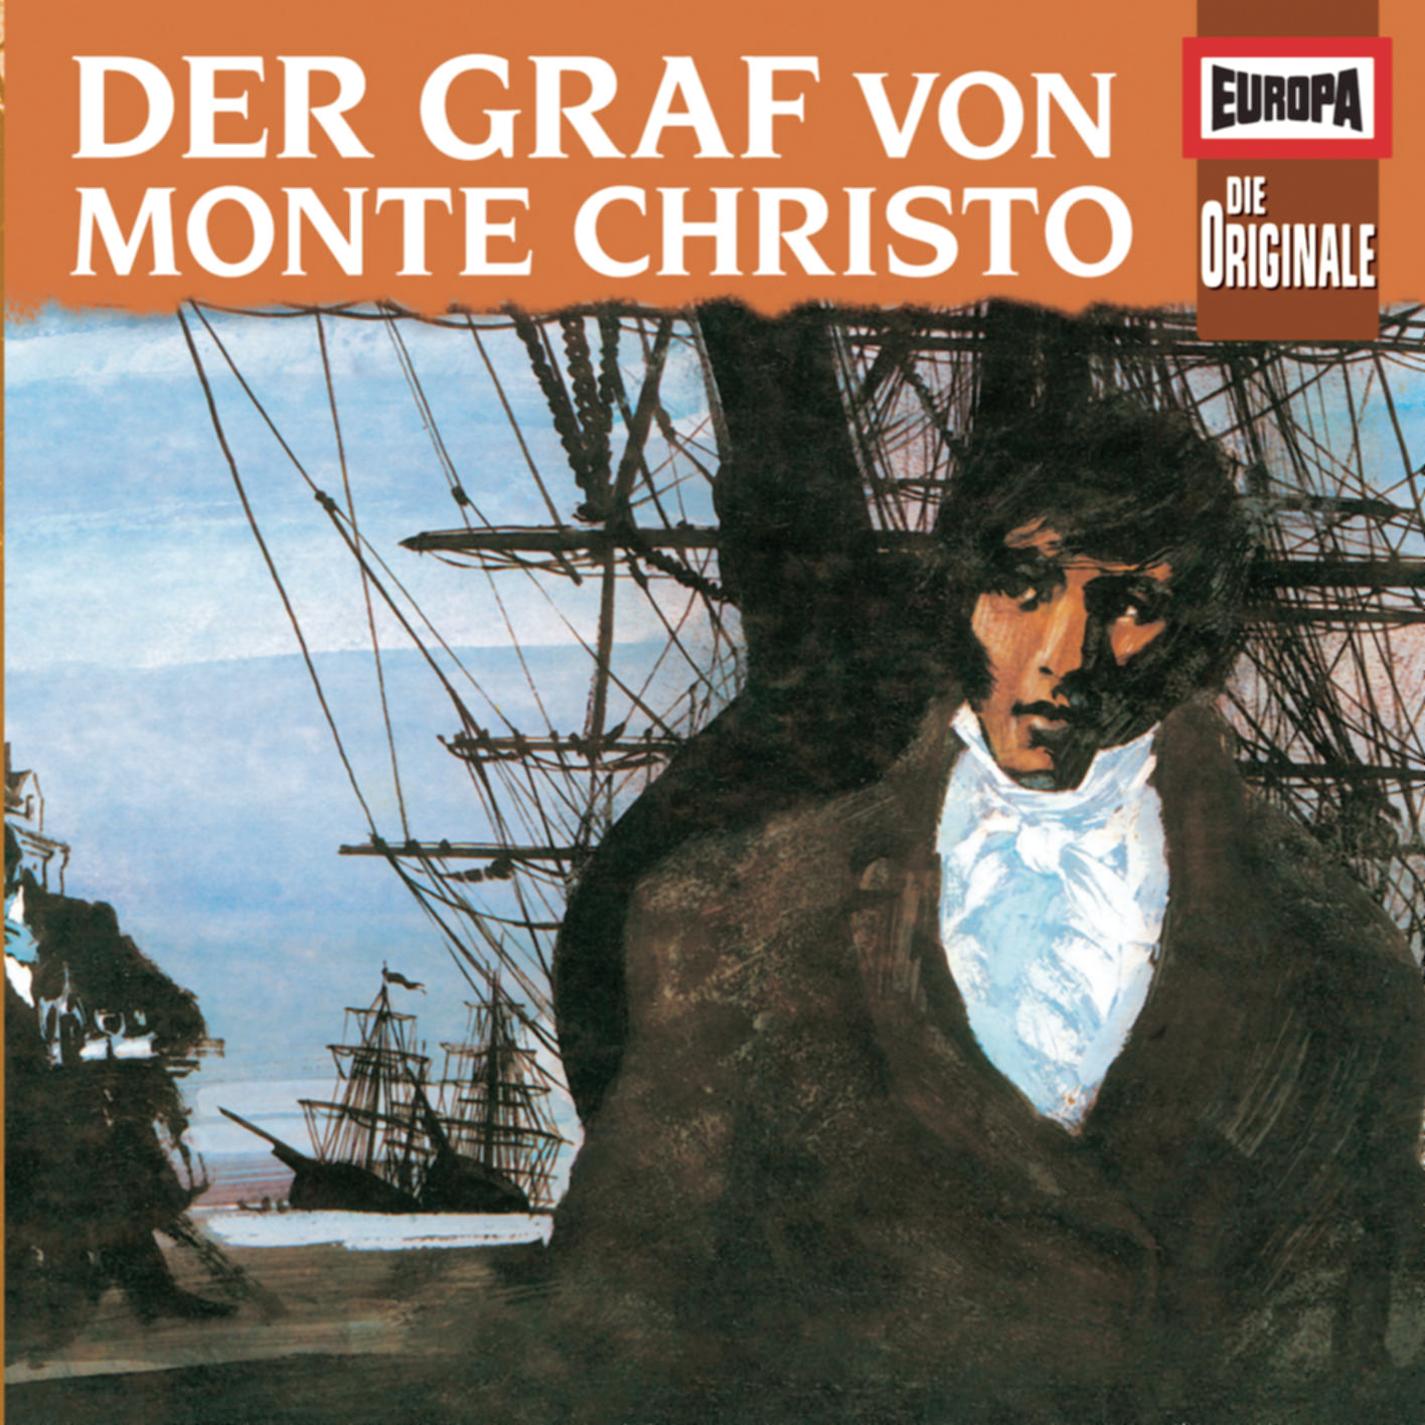  Die Originale - Der Graf von Monte Christo